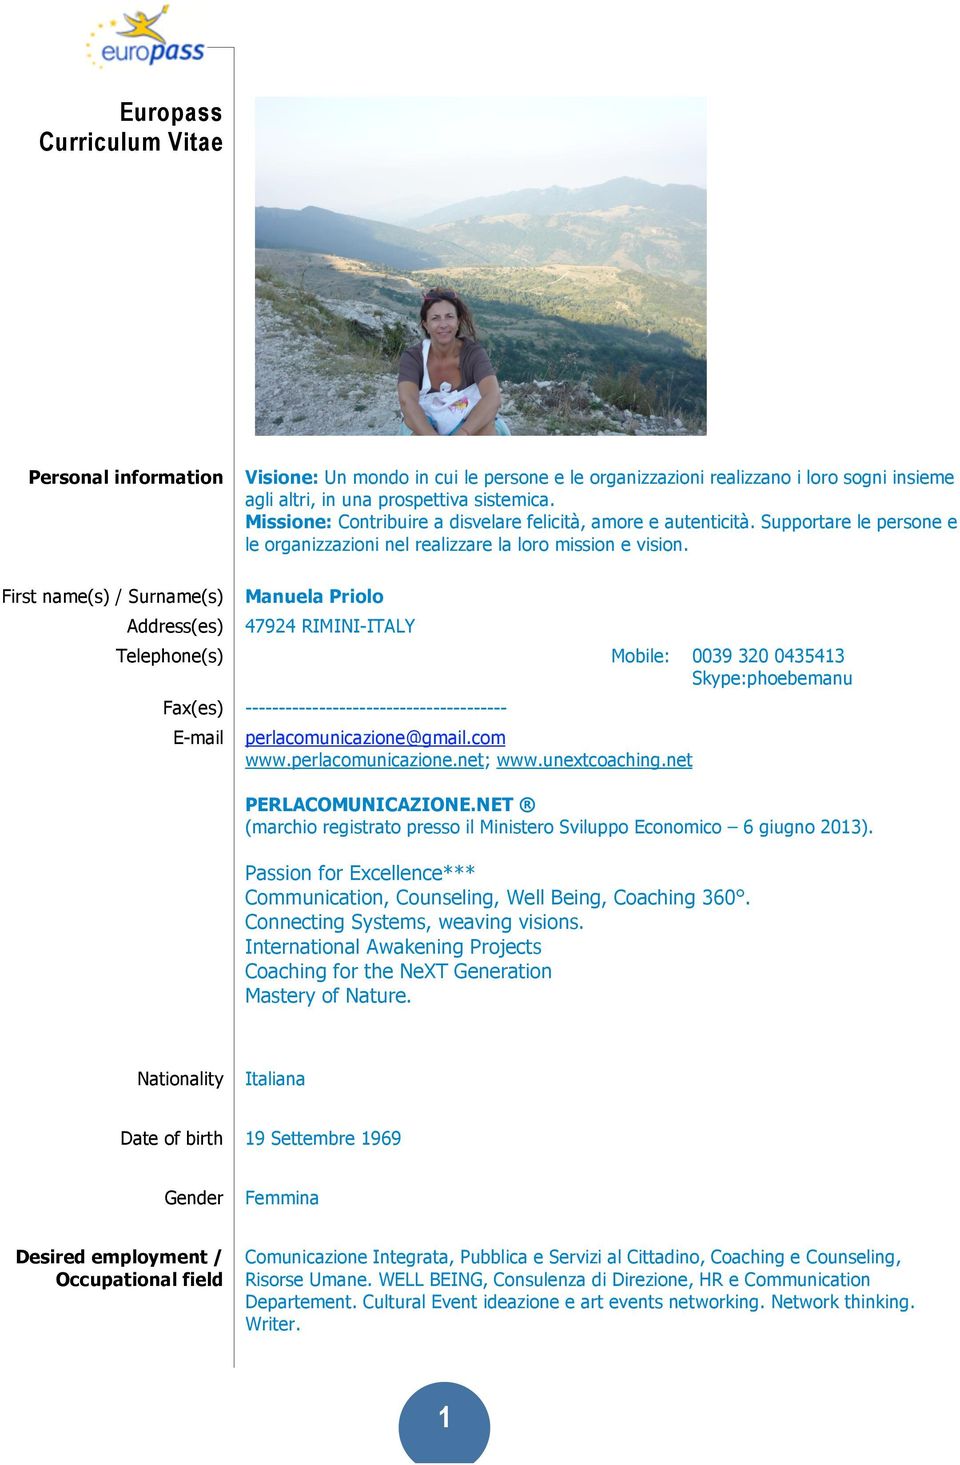 Manuela Priolo 47924 RIMINI-ITALY Telephone(s) Fax(es) E-mail Mobile: 0039 320 0435413 Skype:phoebemanu --------------------------------------perlacomunicazione@gmail.com www.perlacomunicazione.net; www.